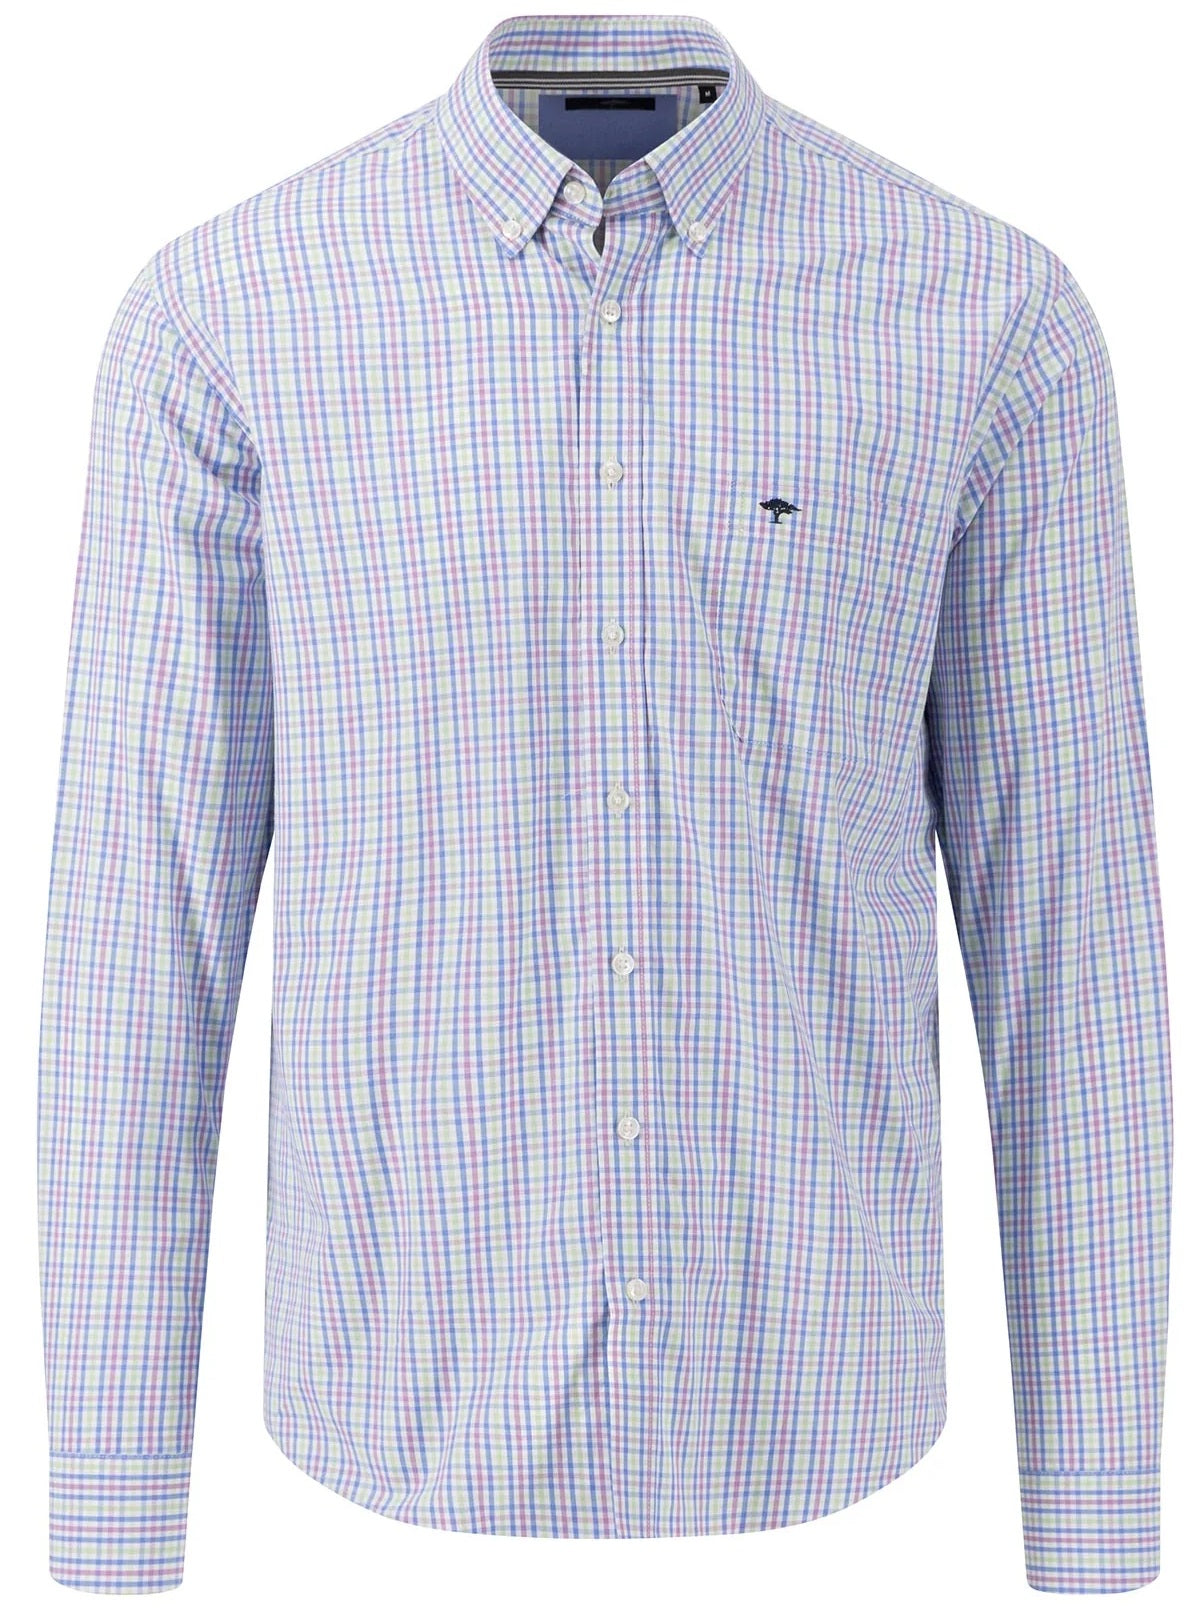 FYNCH HATTON Pure Cotton Shirt - Men's – Dusty Lavender Check